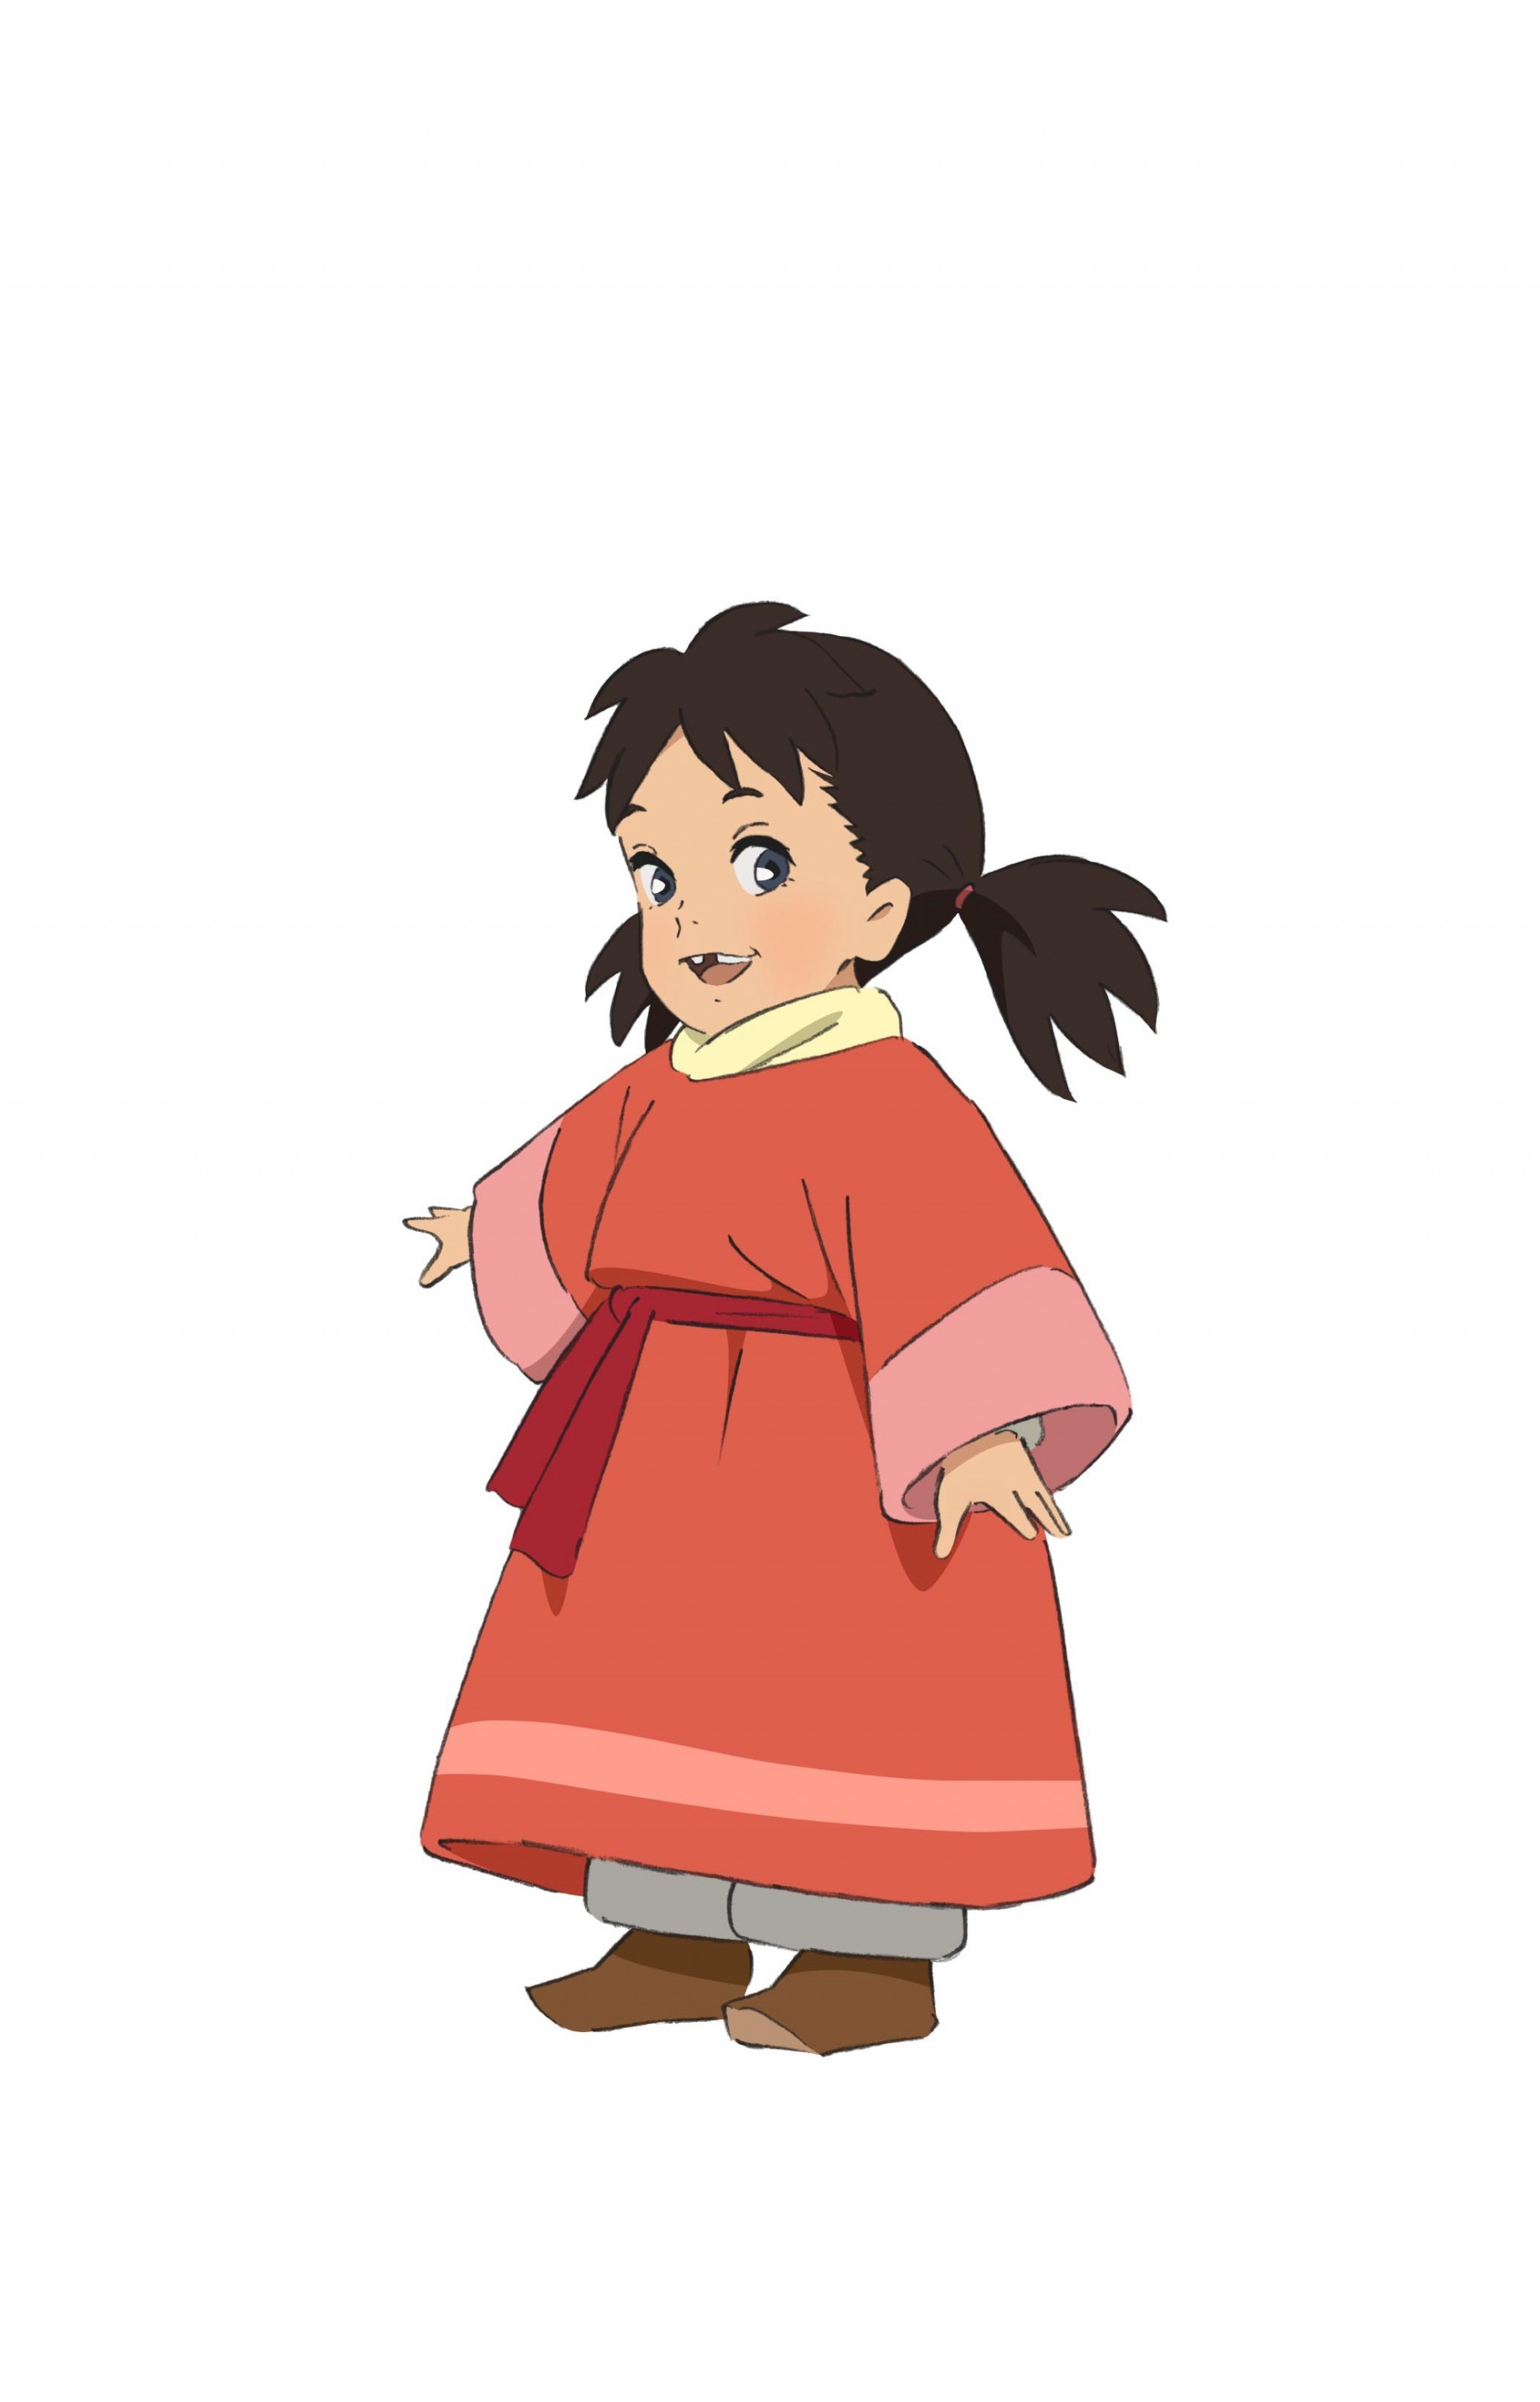 动画电影《鹿王》5 月 13 日在台上映 动画电影版珍藏小说 5 月上市